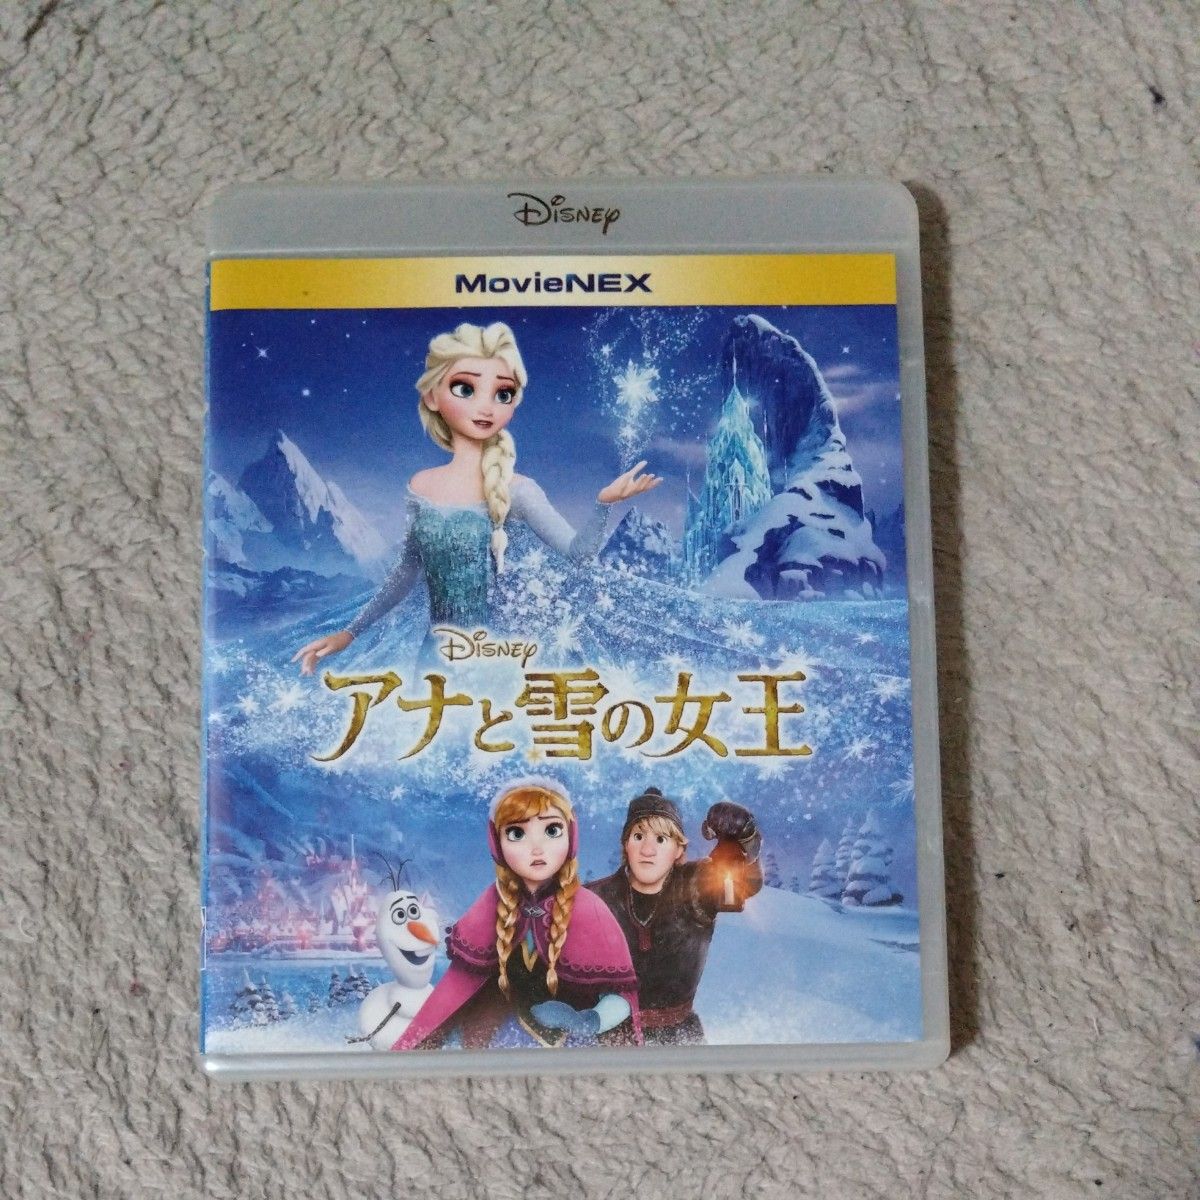 アナと雪の女王 MovieNEX [ブルーレイ+DVD+MovieNEXワールド] [Blu-ray 